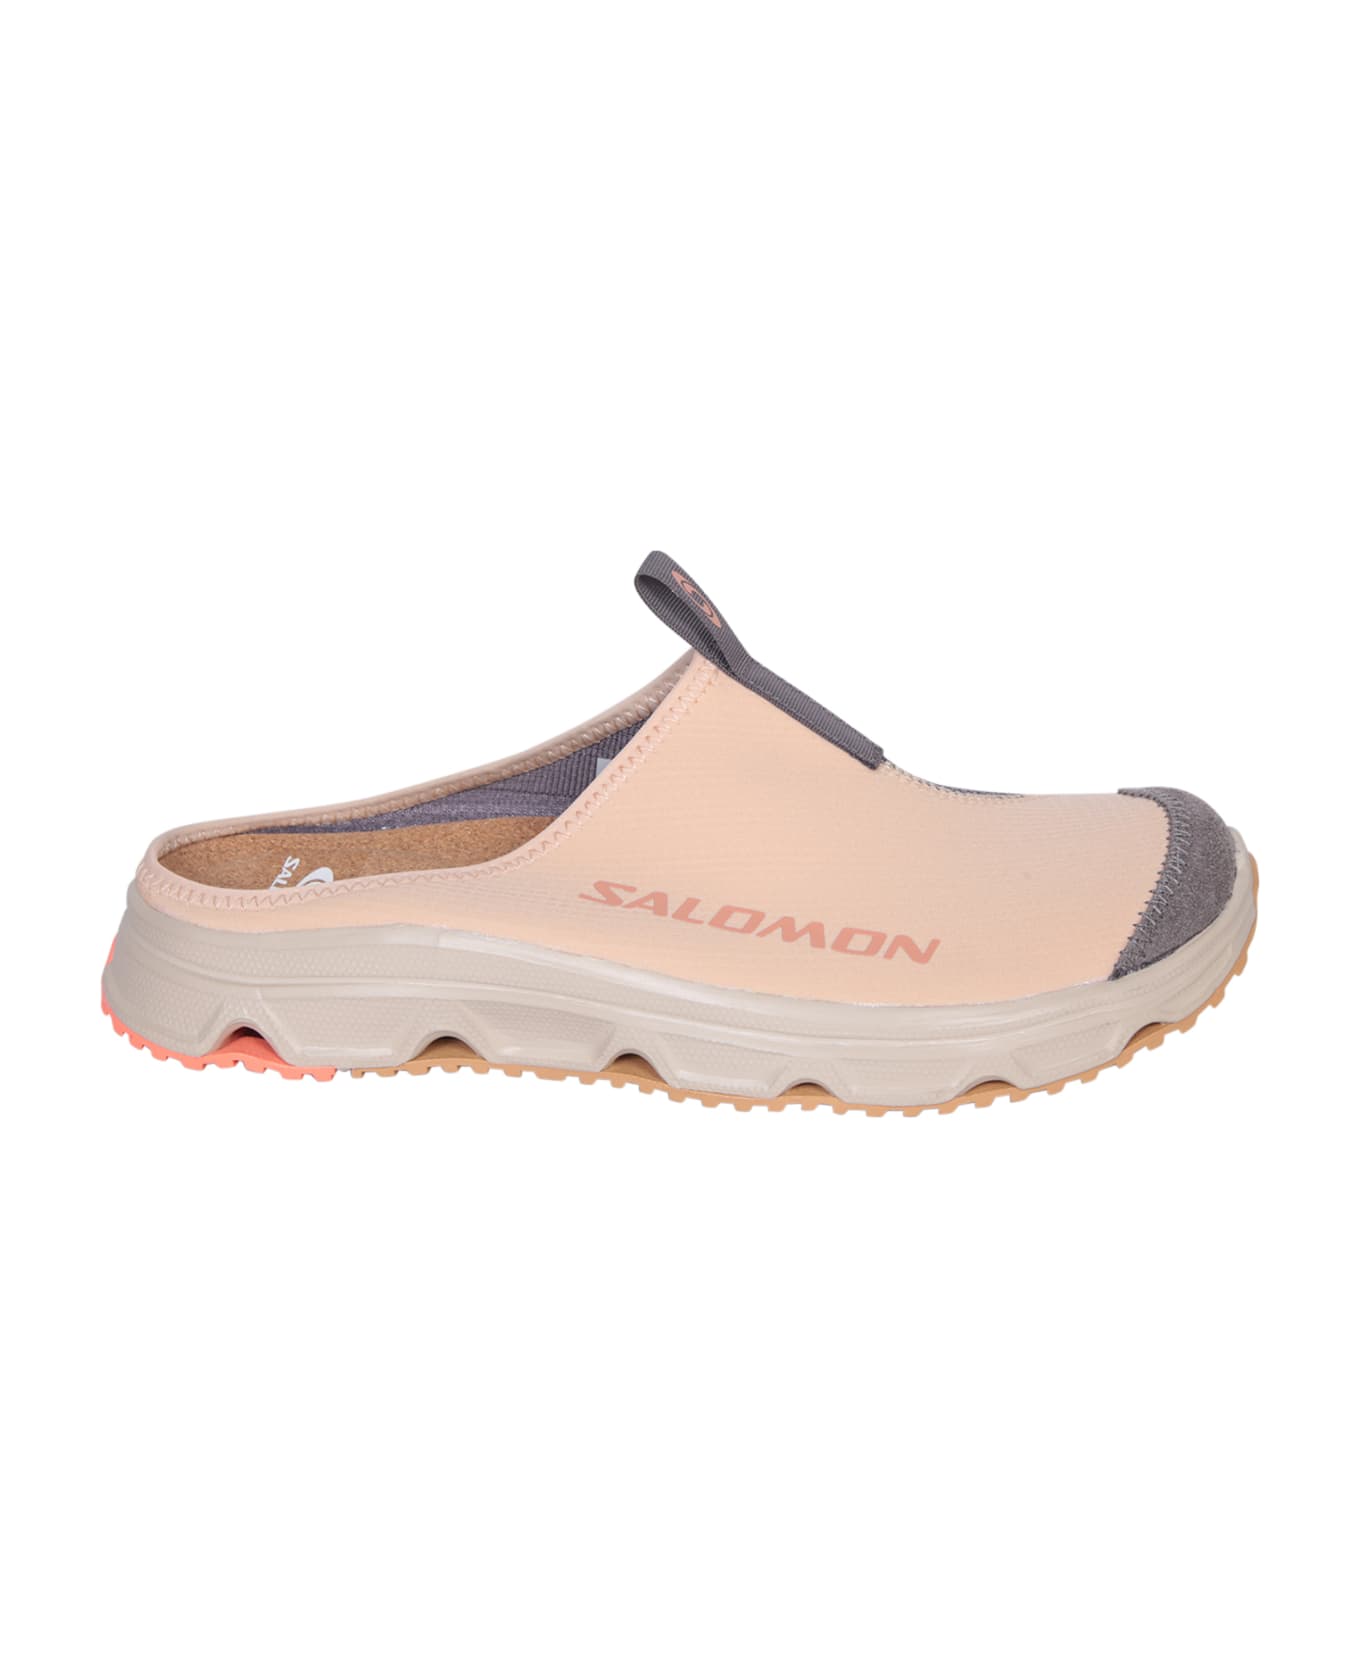 Salomon Rx Slide 3.0 Sneakers In Pink - Pink